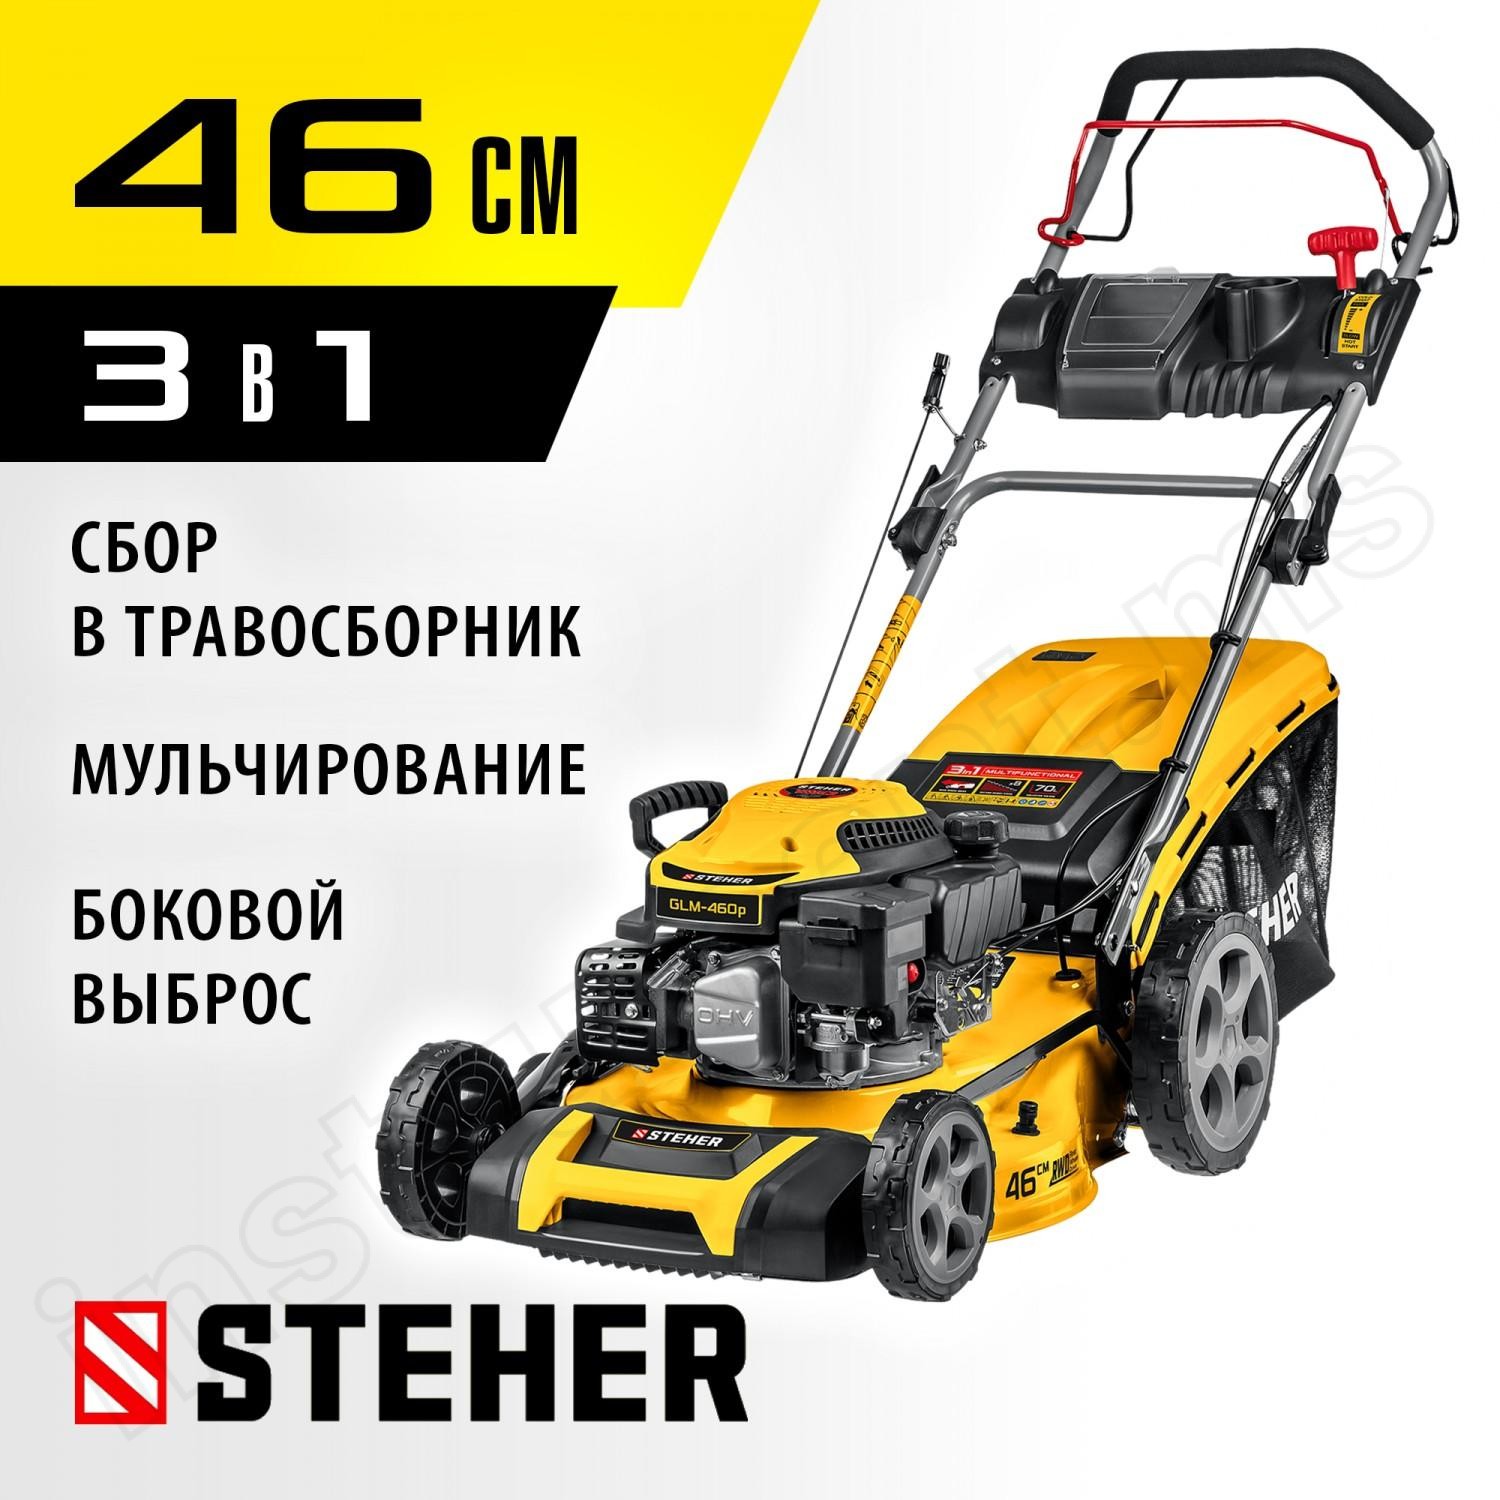 STEHER 2.9 кВт, 4.5 л.с., 460 мм, самоходная газонокосилка бензиновая GLM-460p - фото 1